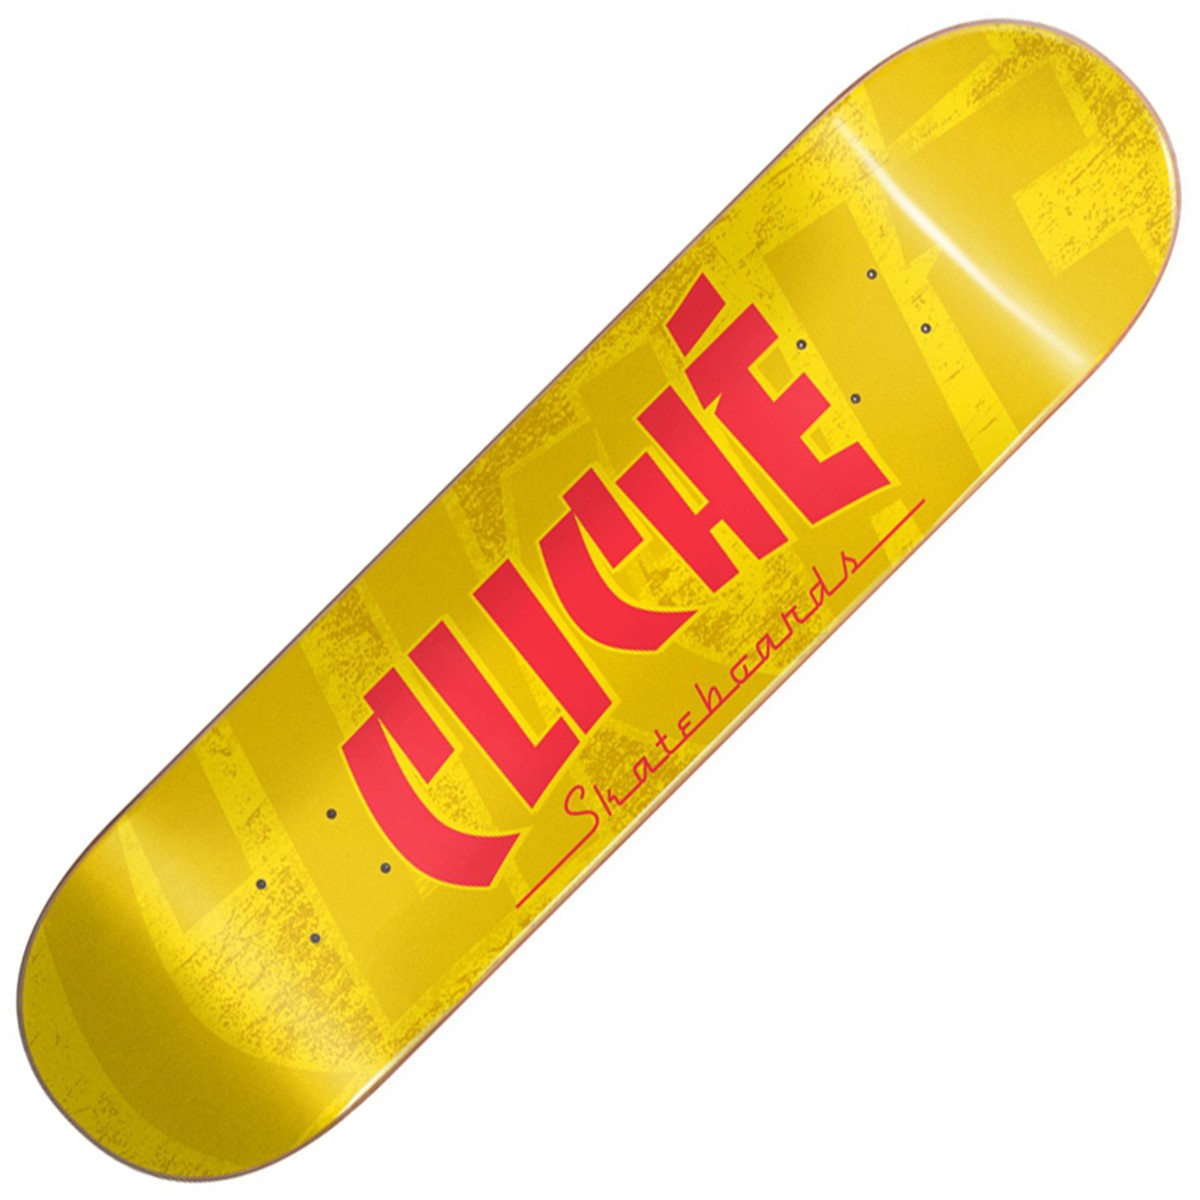 CLICHÉ “Banco RHM” skateboard deck